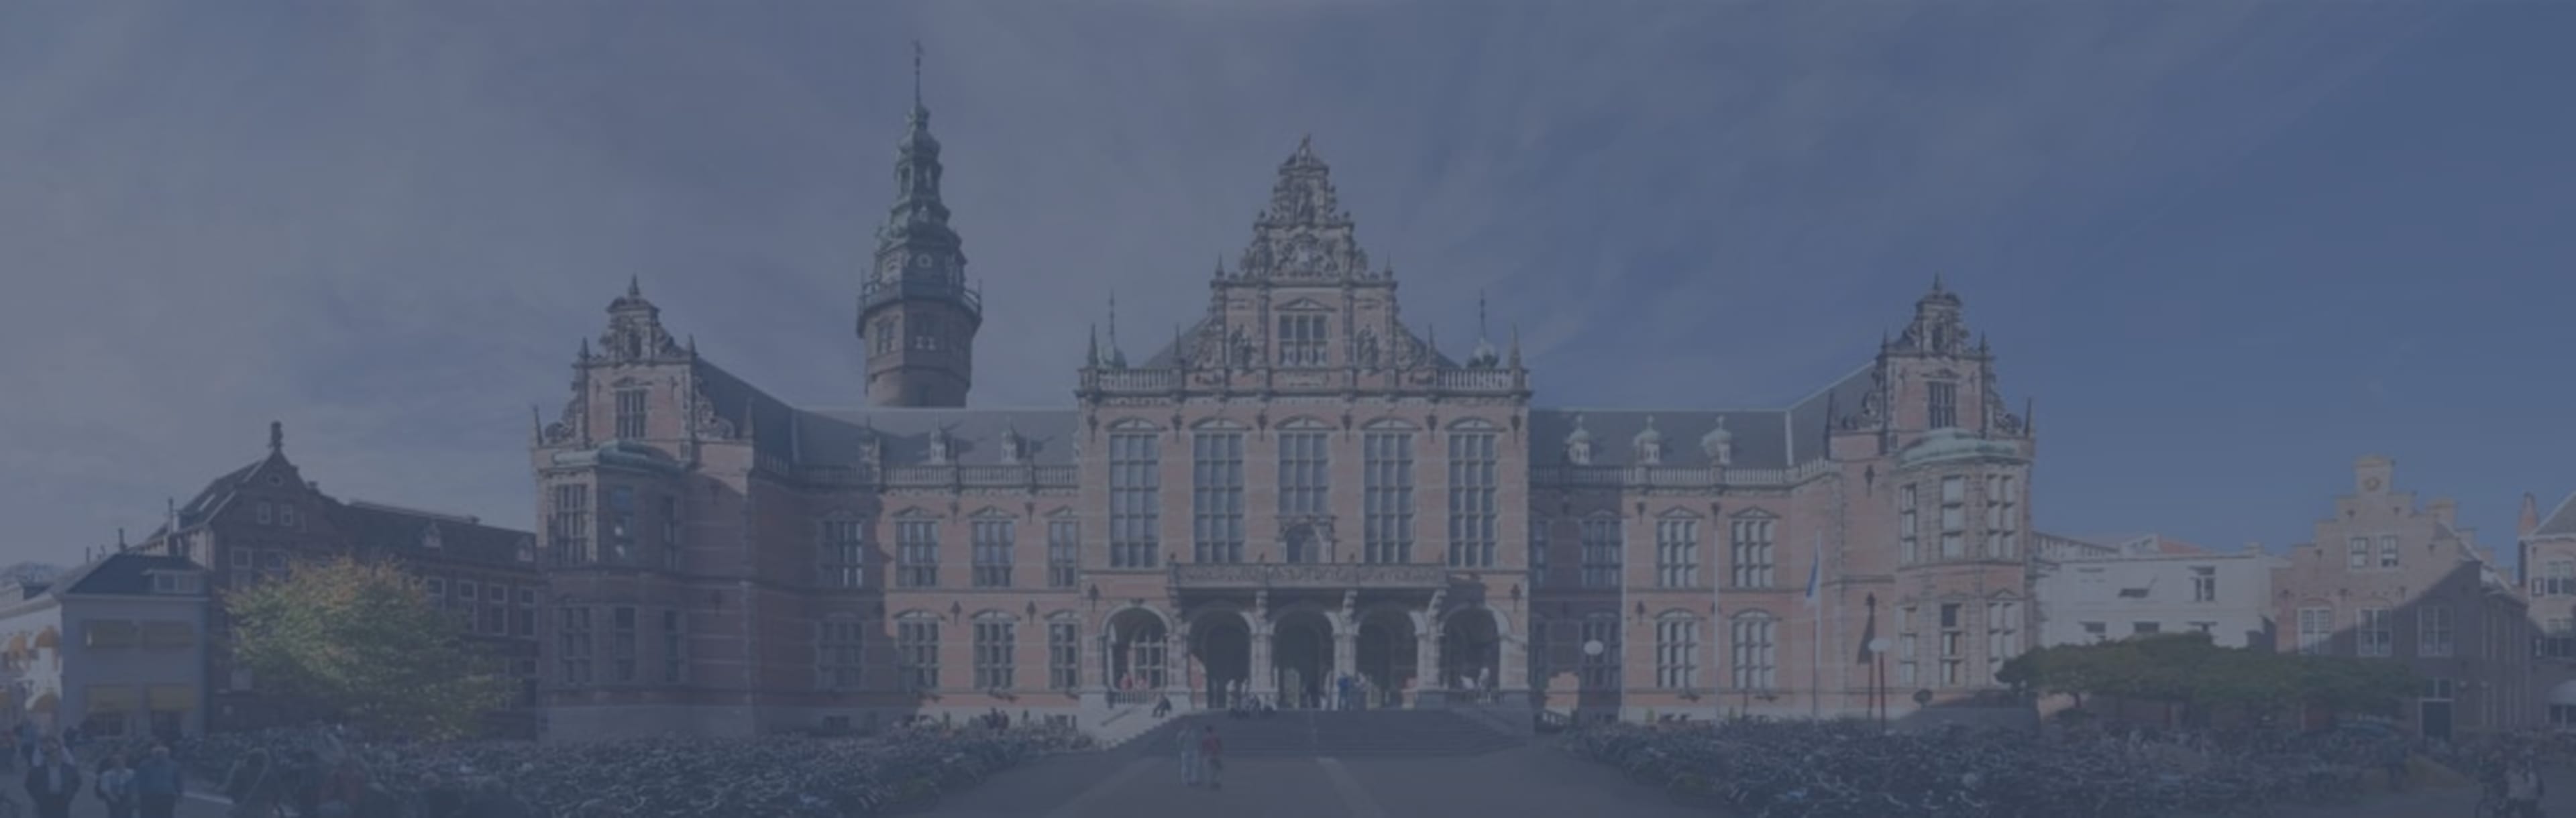 University of Groningen LLB v mezinárodním a evropském právu